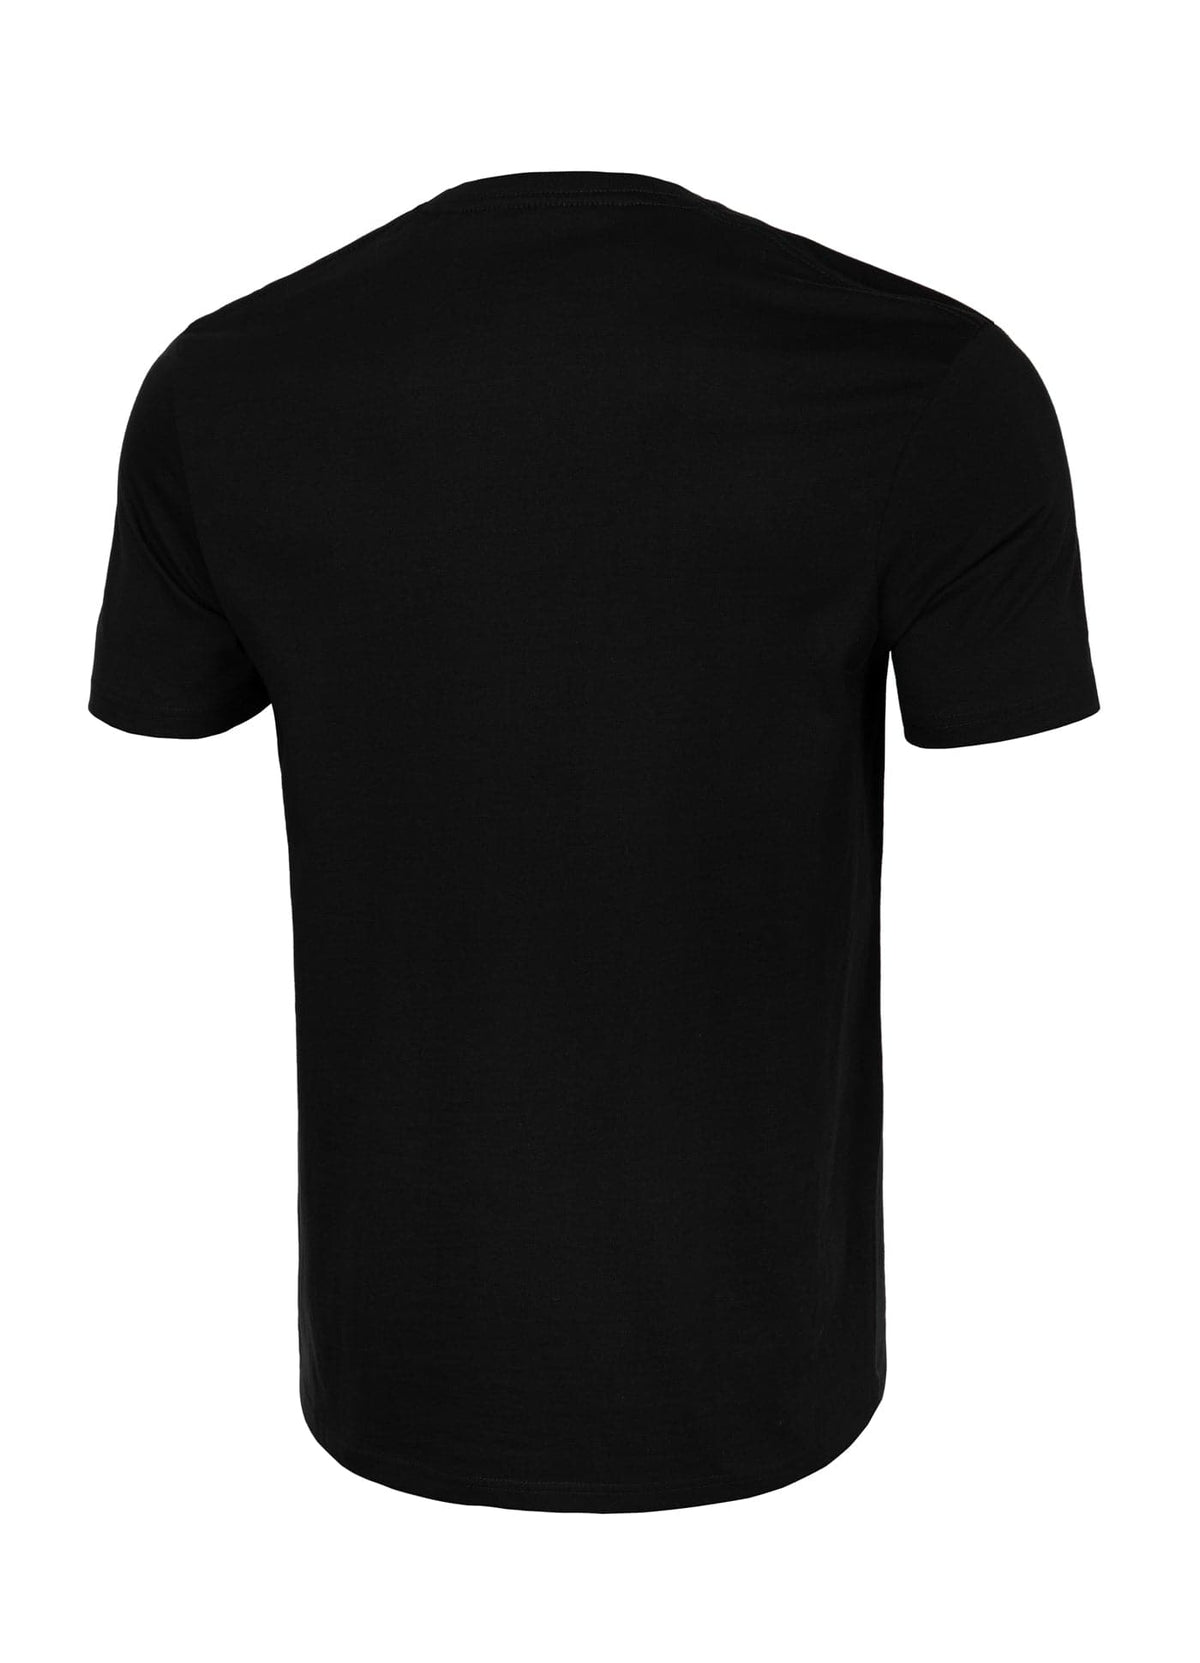 DOG LOGO Lightweight Black T-shirt